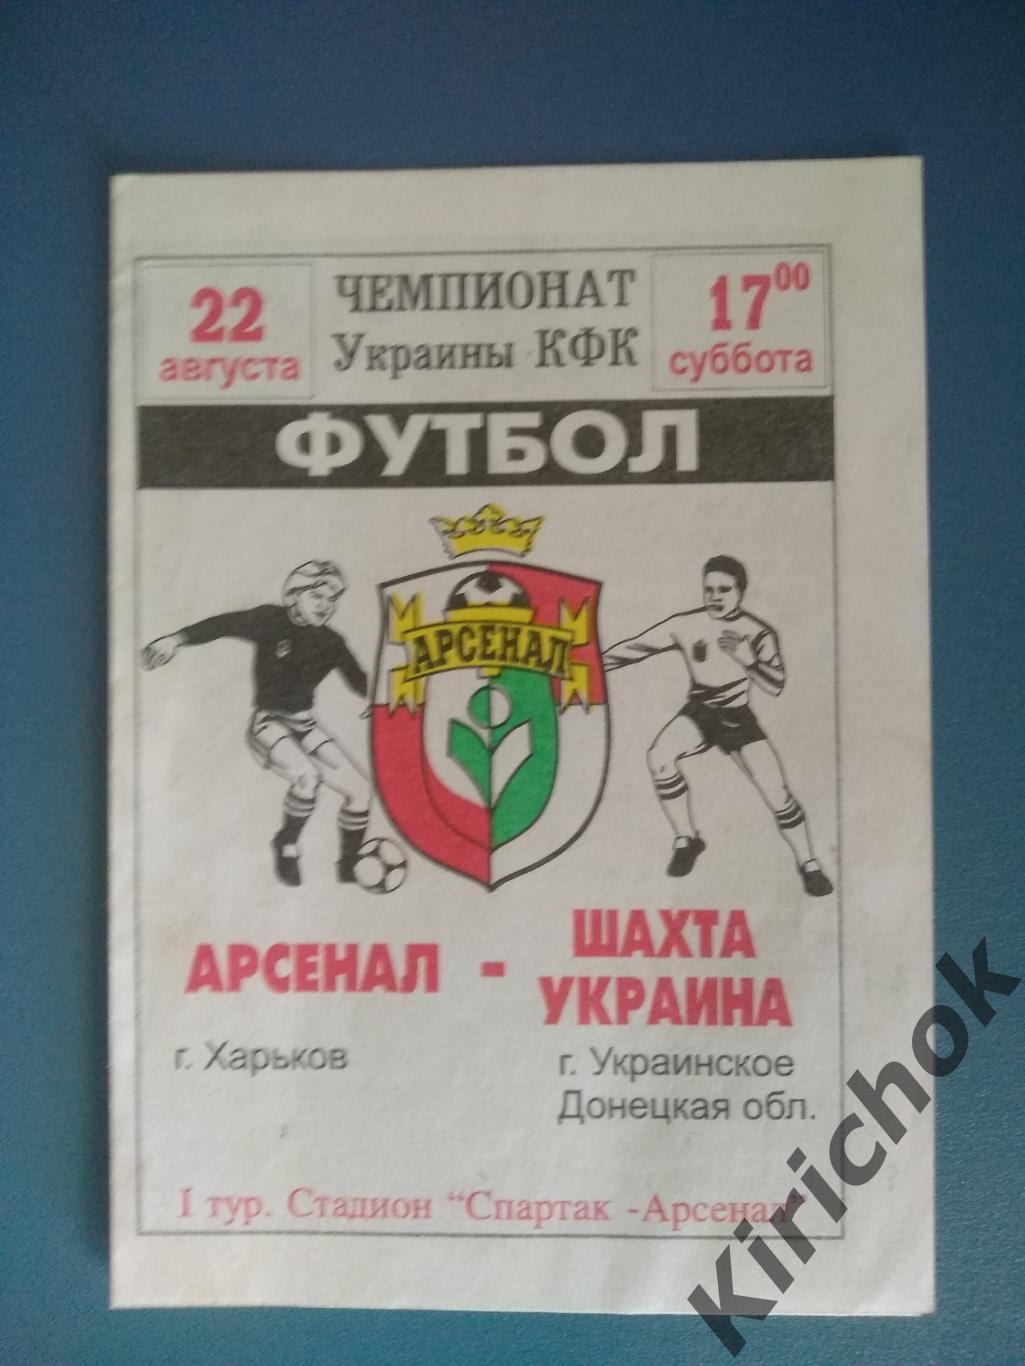 Арсенал Харьков - Шахта Украина Донецкая область 1998